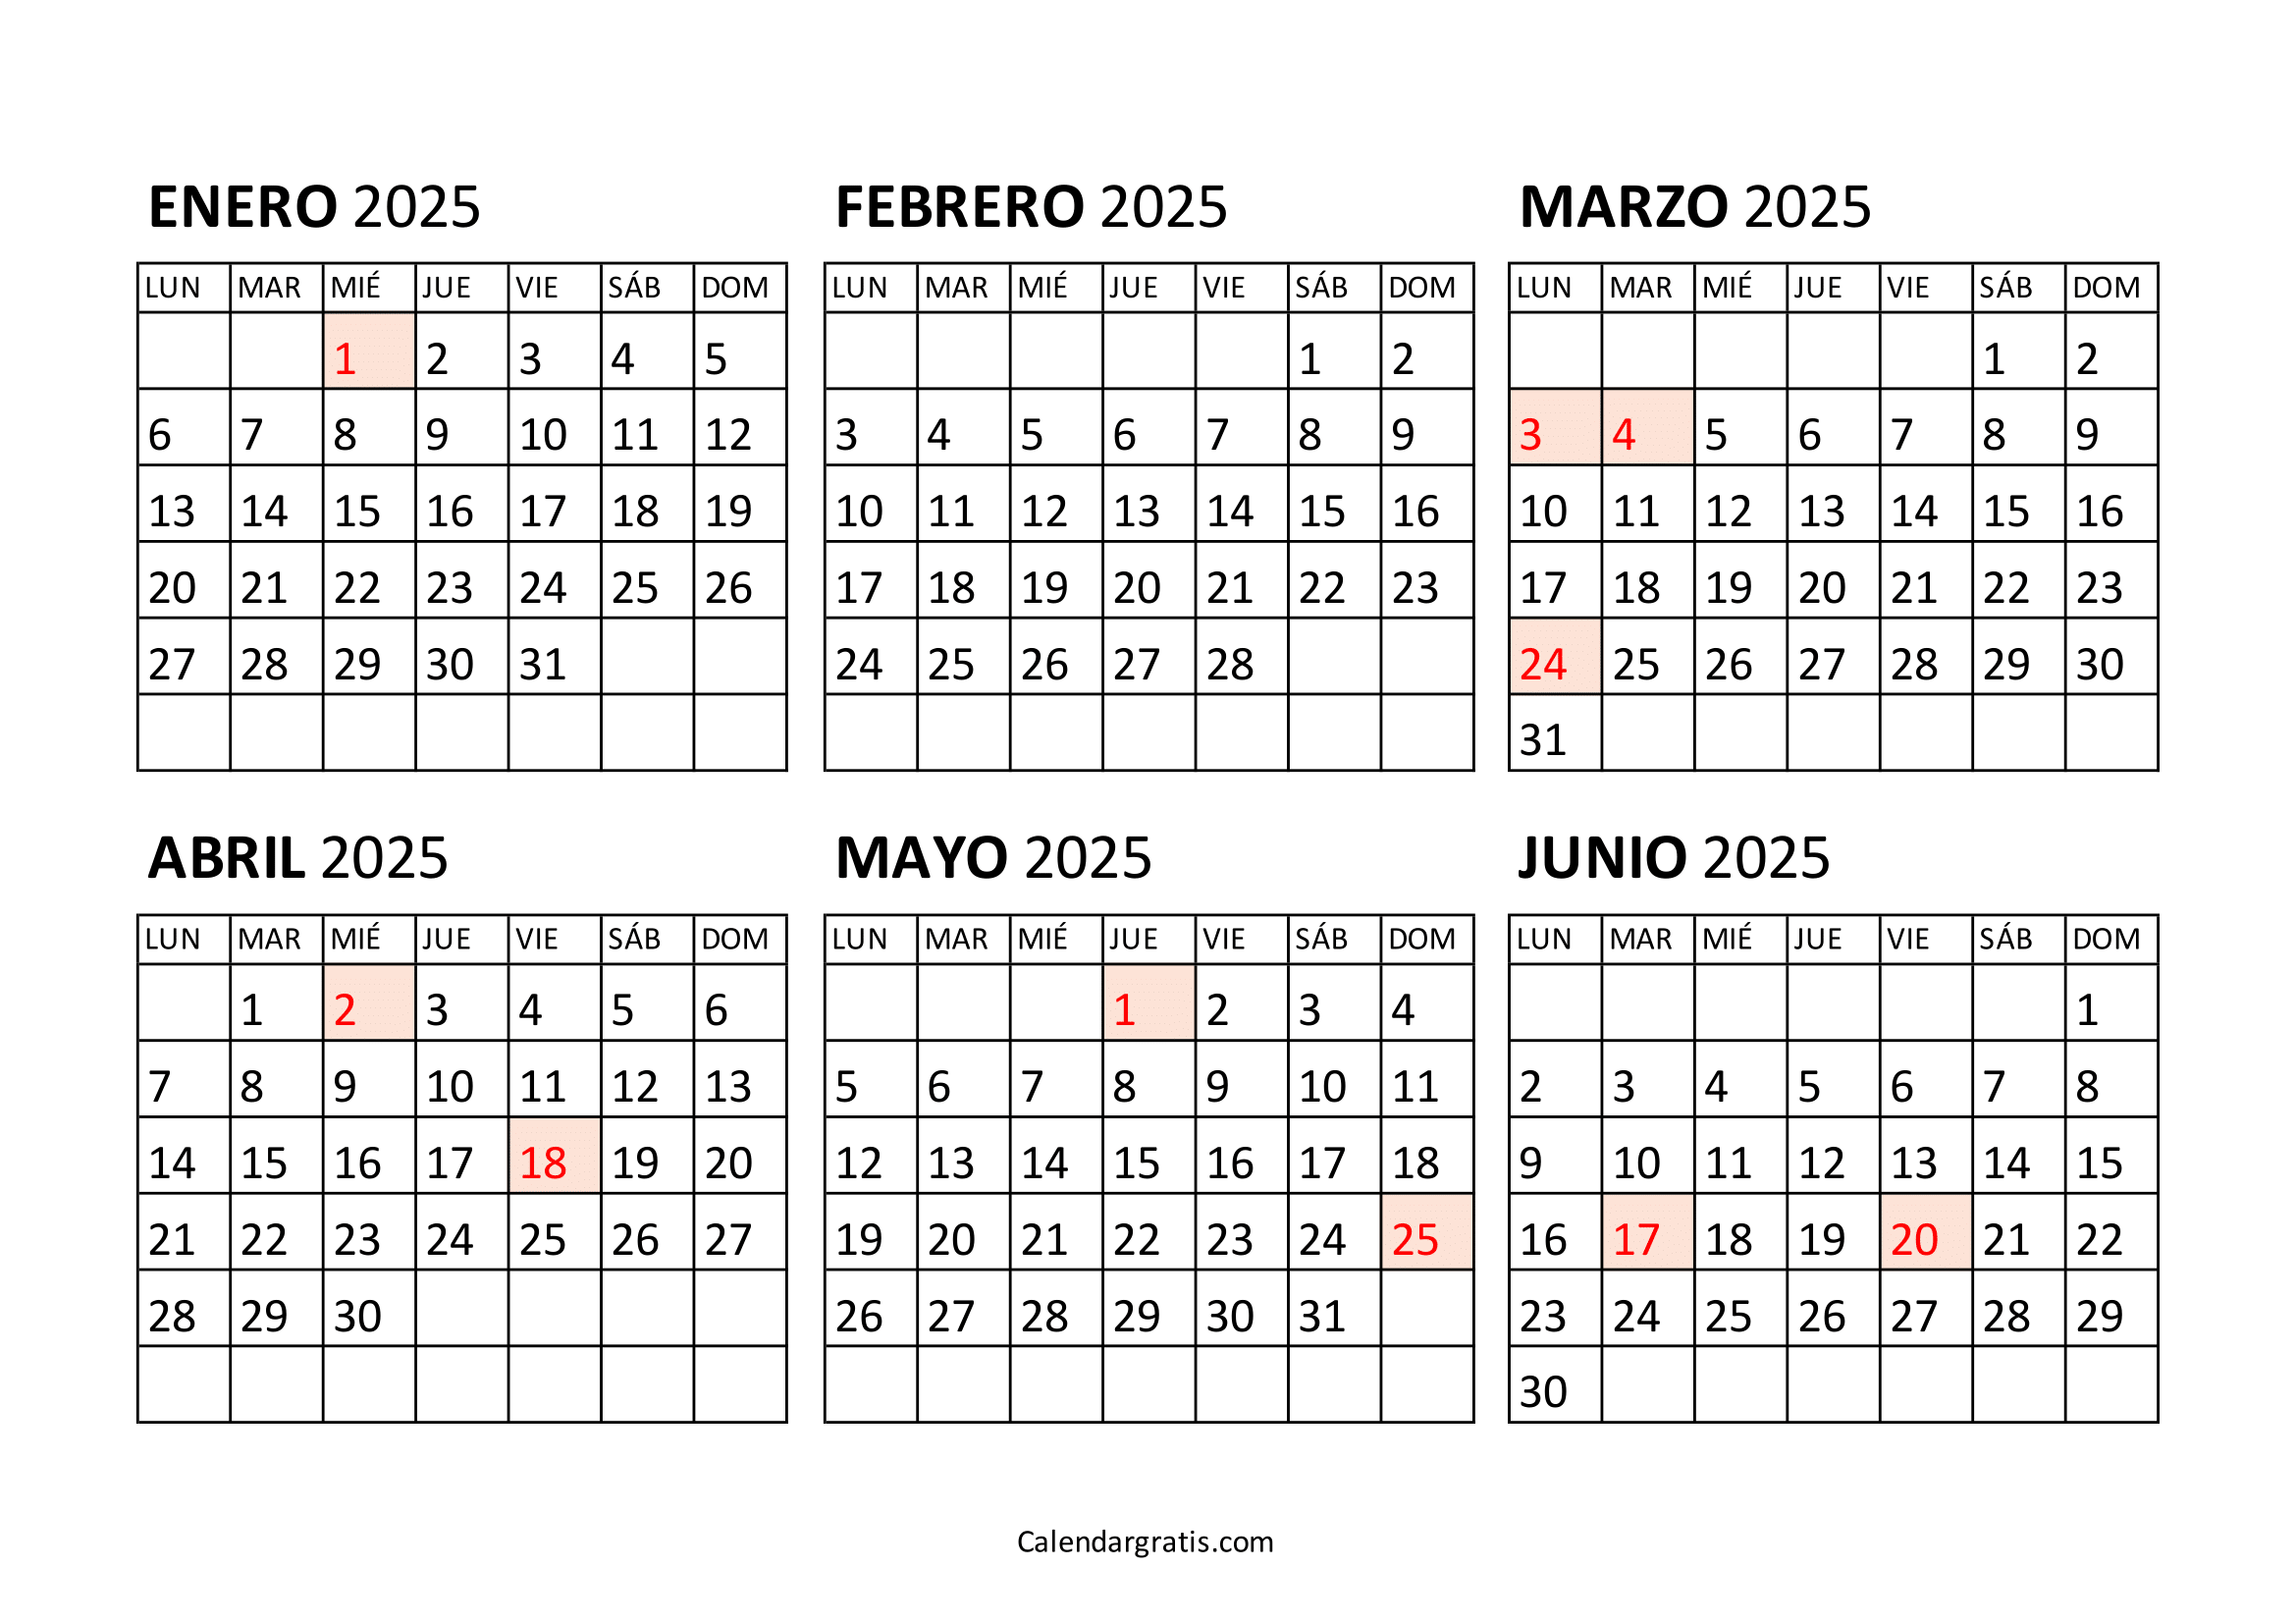 Calendario enero a junio 2025 Argentina